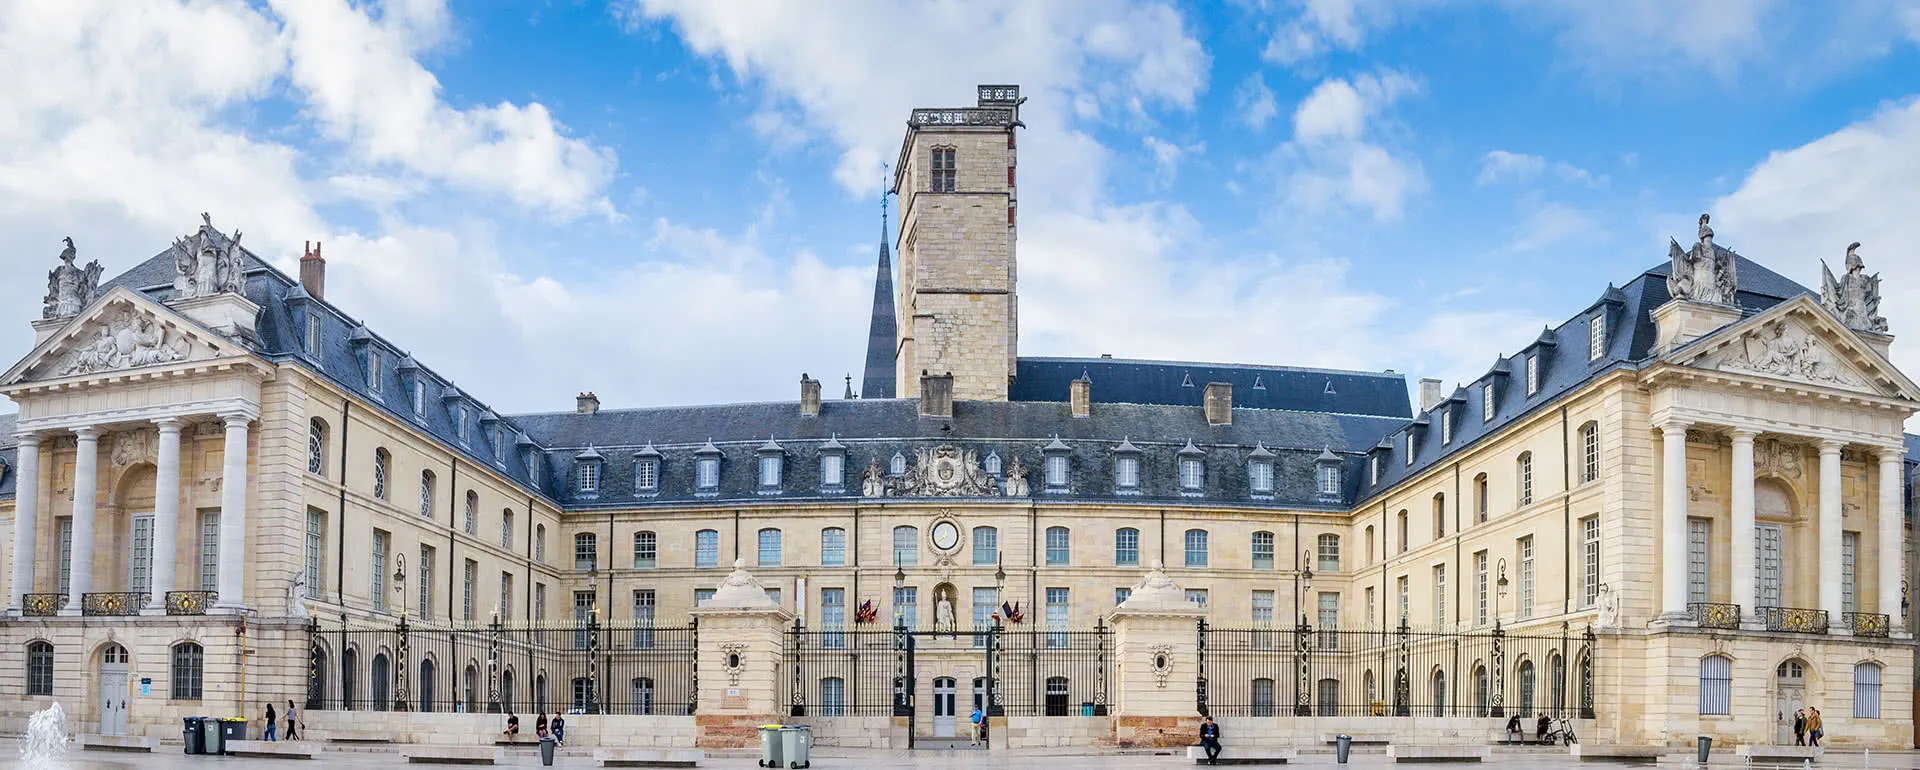 Dijon - das Reiseziel mit Jugendherbergen